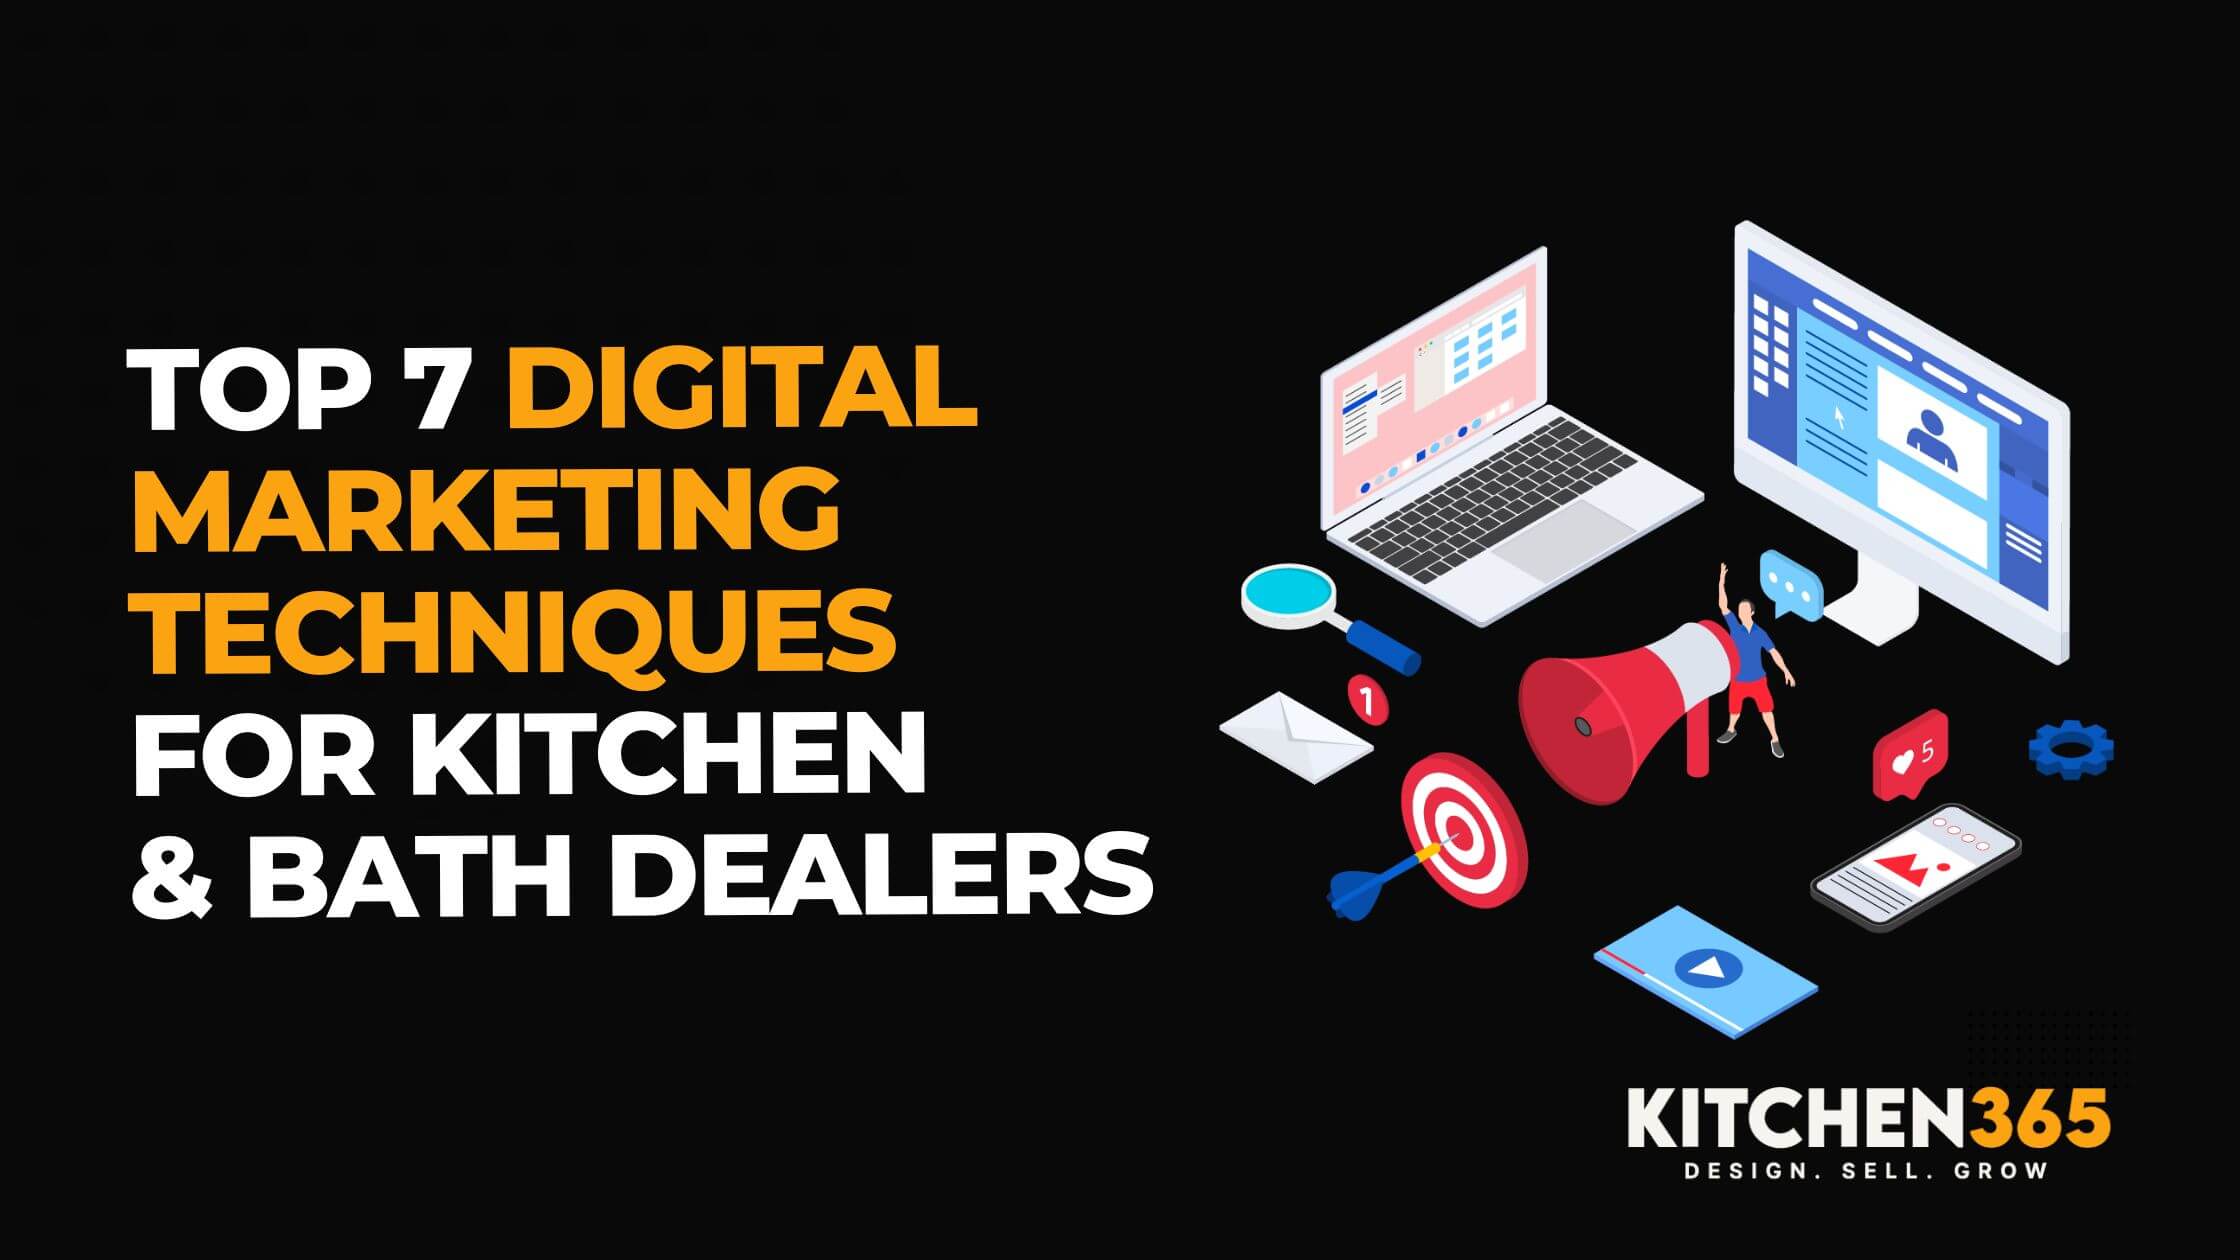 Top 7 Digital Marketing Techniques